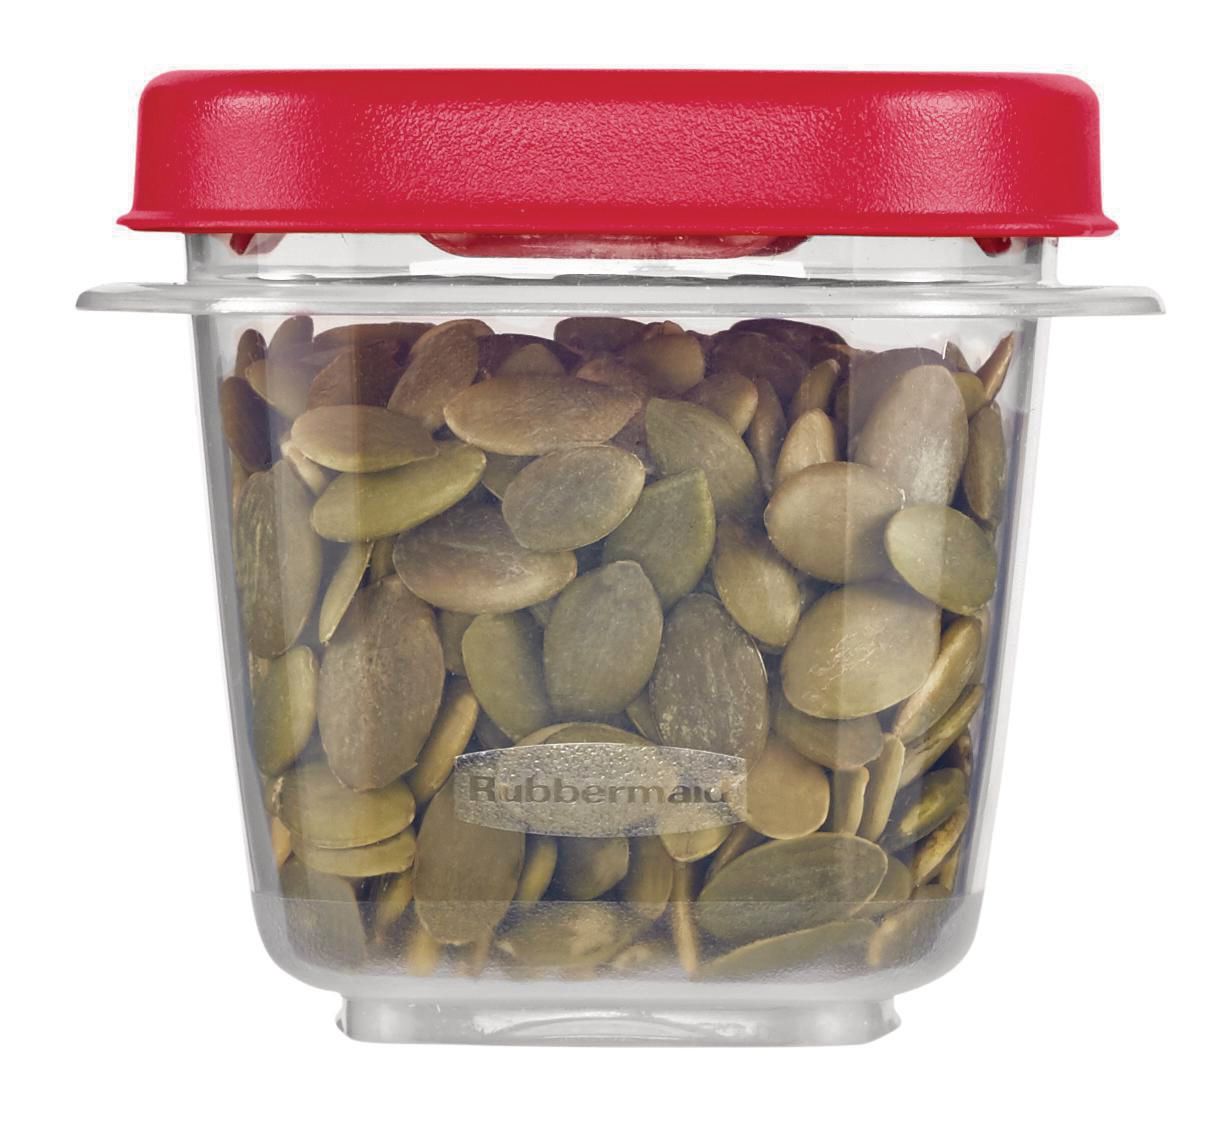 Rubbermaid EasyFindLids Food Storage Container, 118ml (2 Pack)